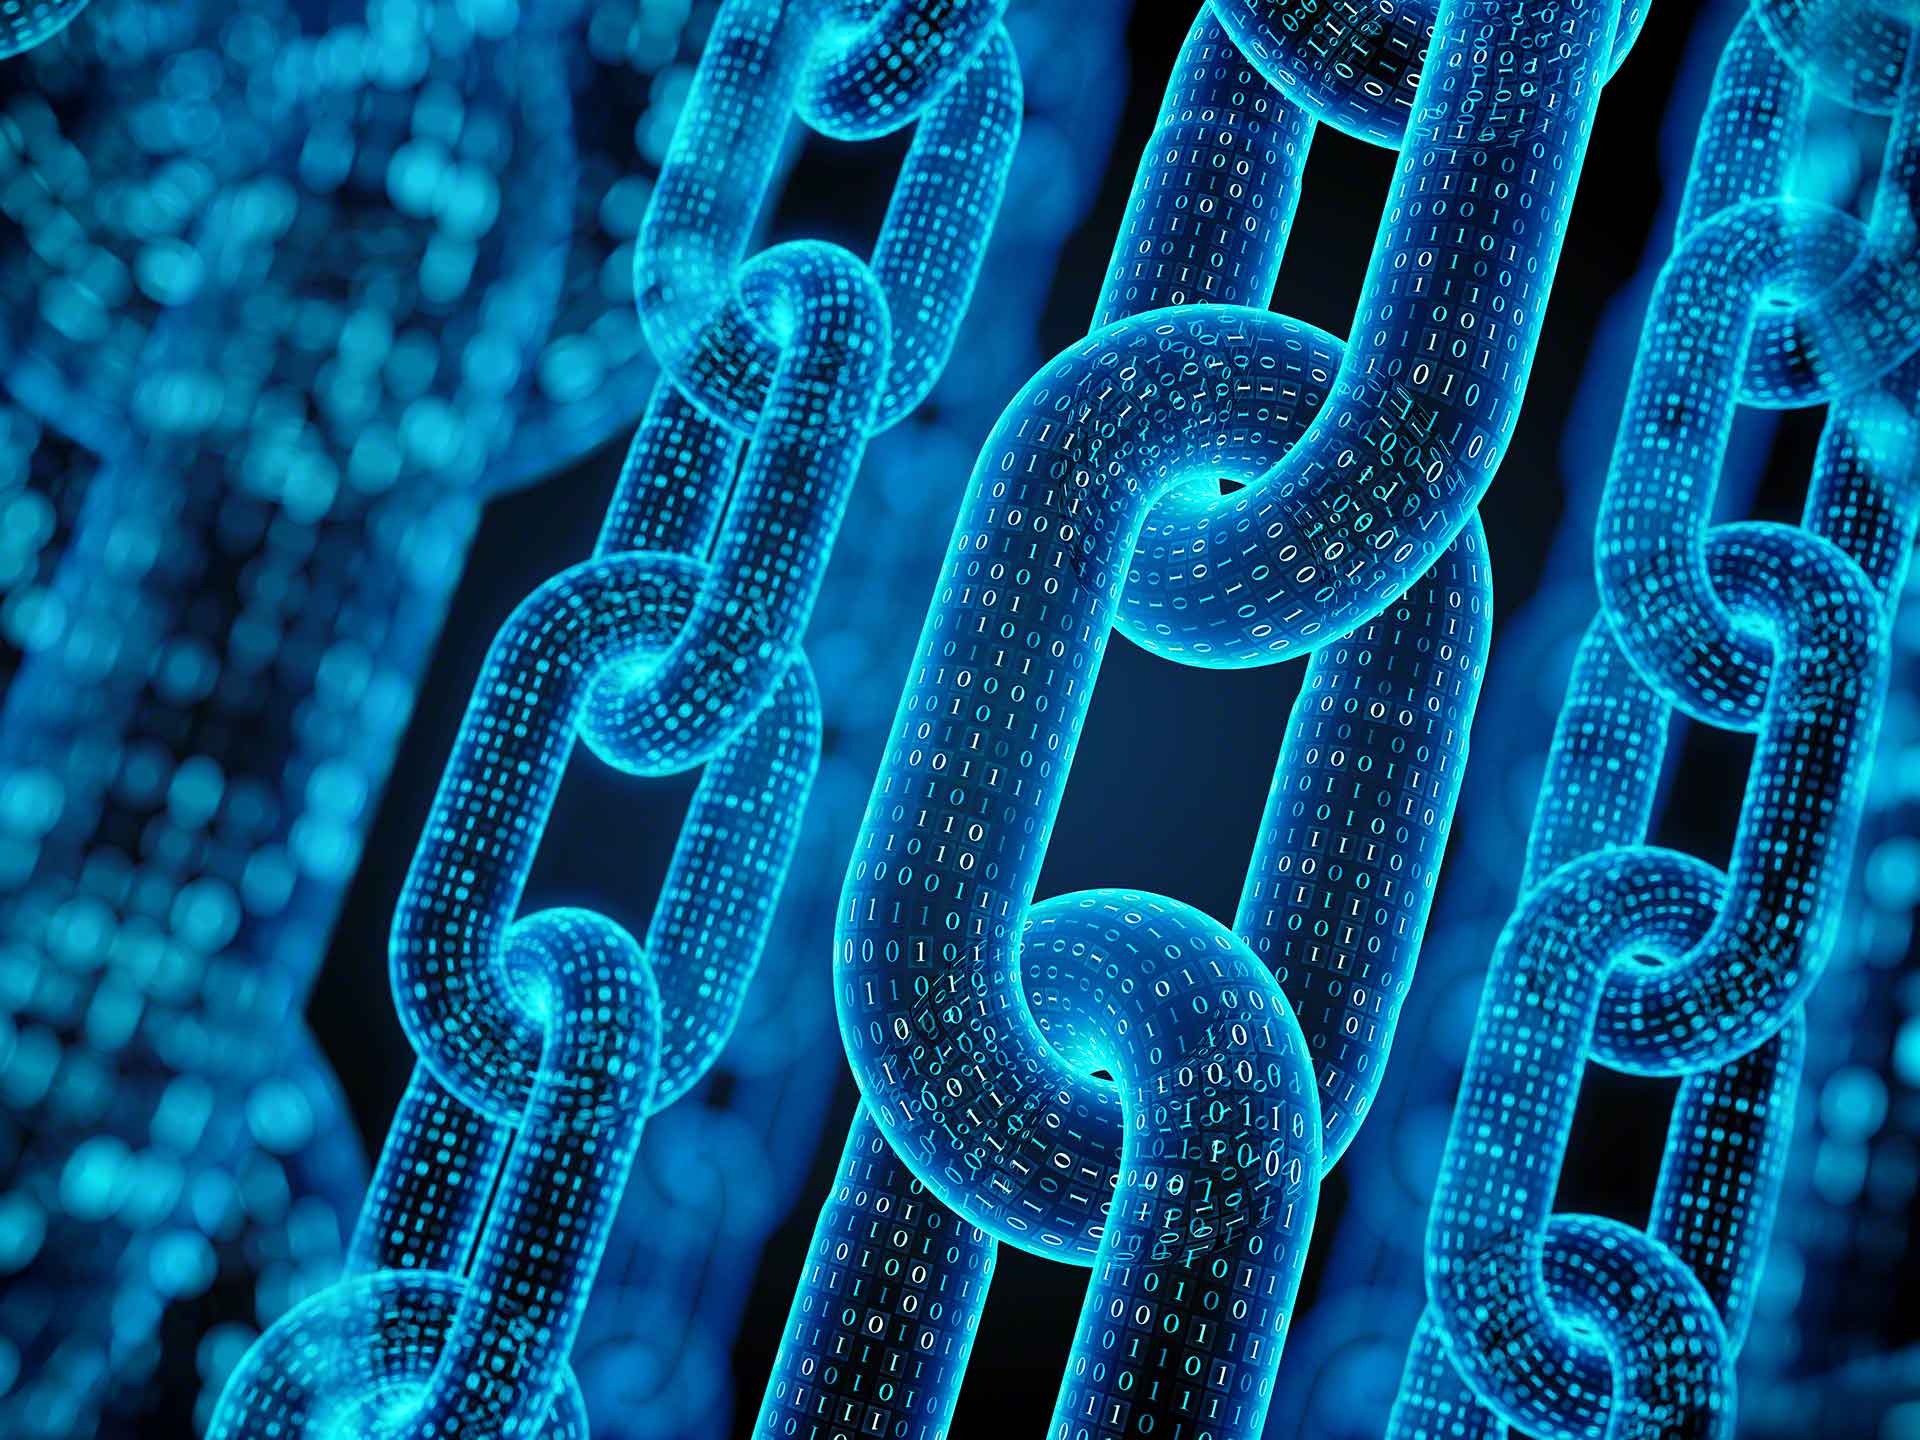 Met de implementatie van blockchain zal de uitwisseling van industriële informatie flexibeler en veiliger worden